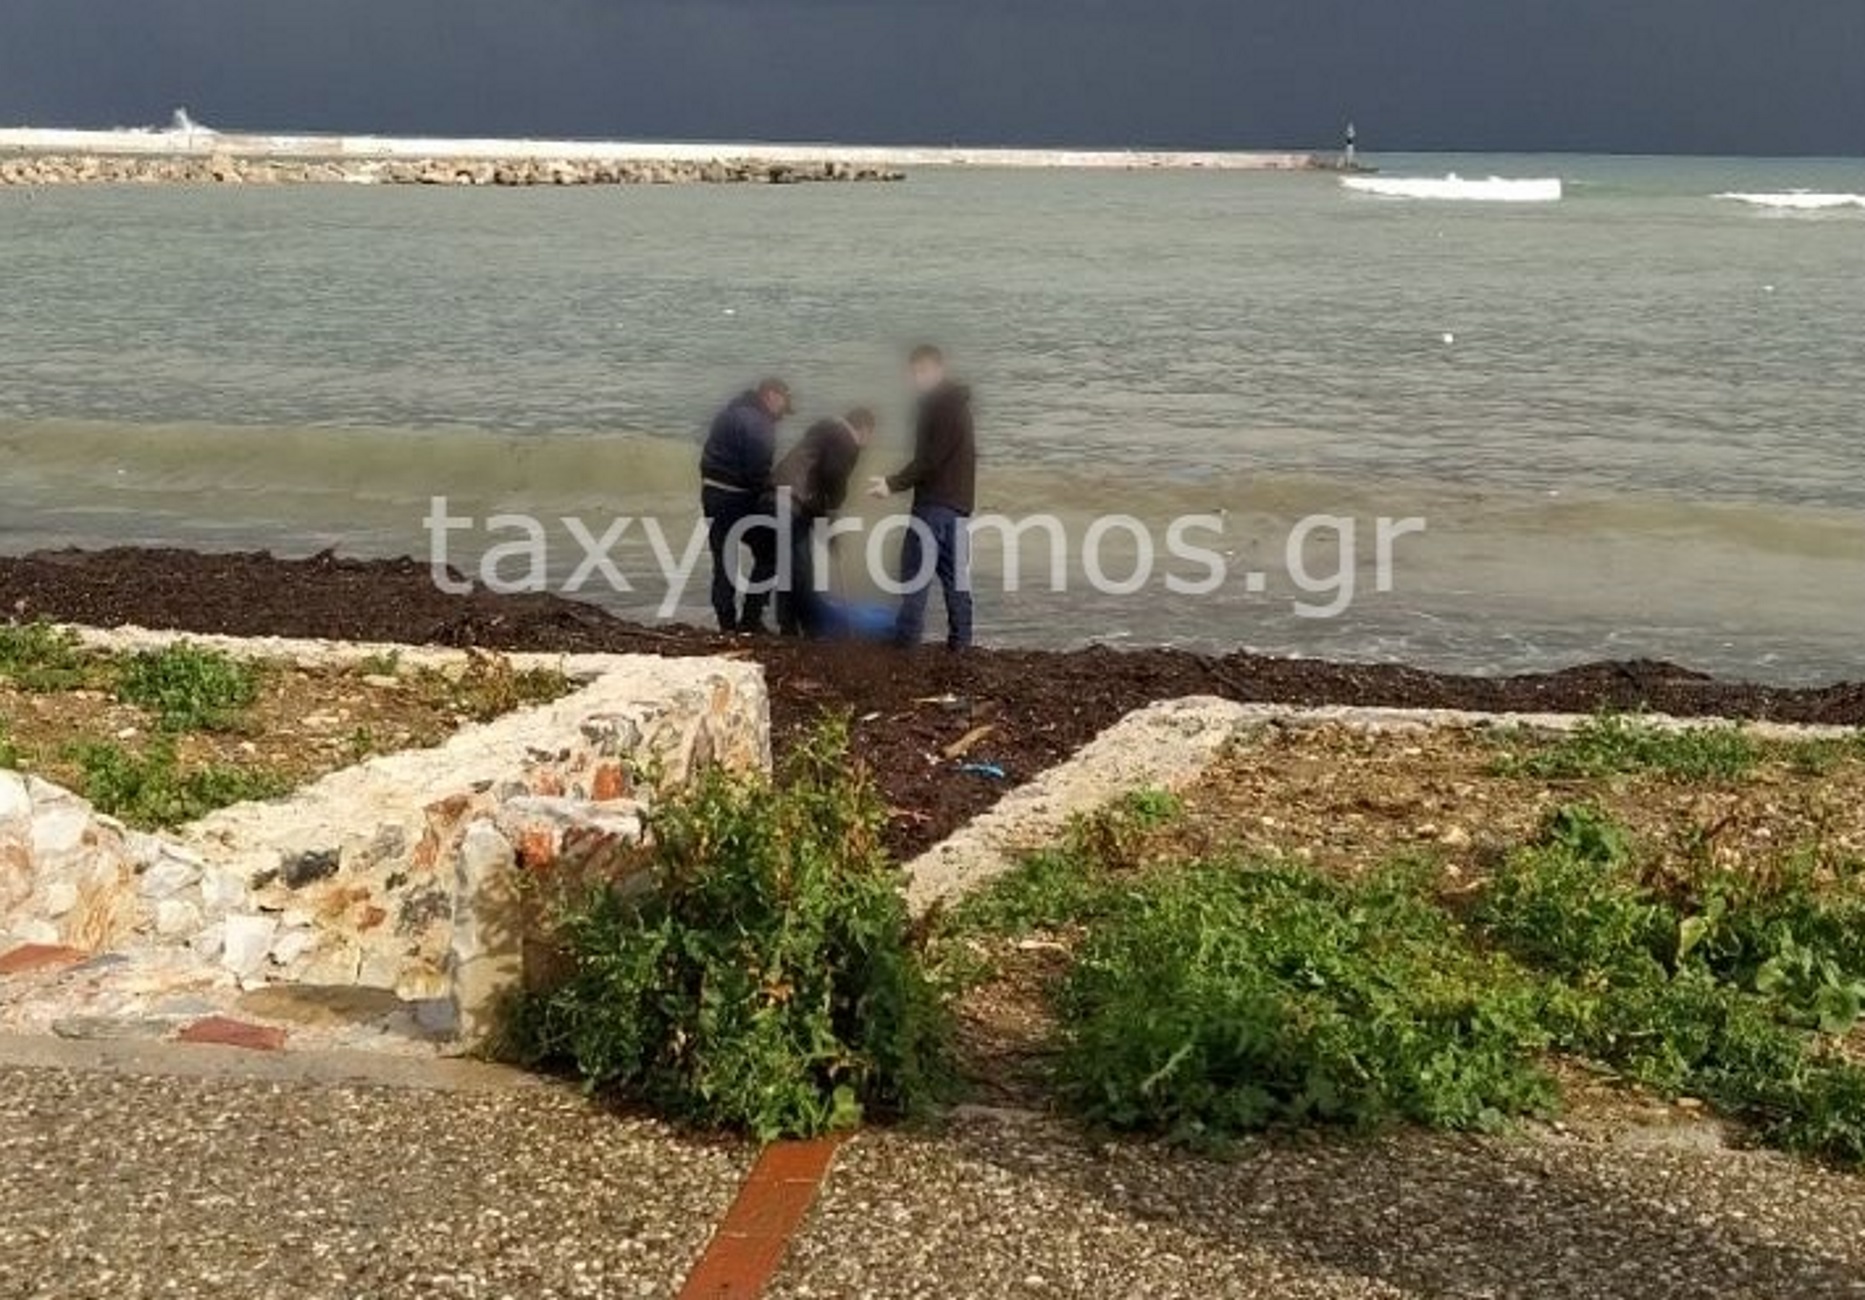 Σκόπελος: Στον αγνοούμενο μοναχό του Αγίου Όρους ανήκει η σορός που ξέβρασε η θάλασσα στο λιμάνι